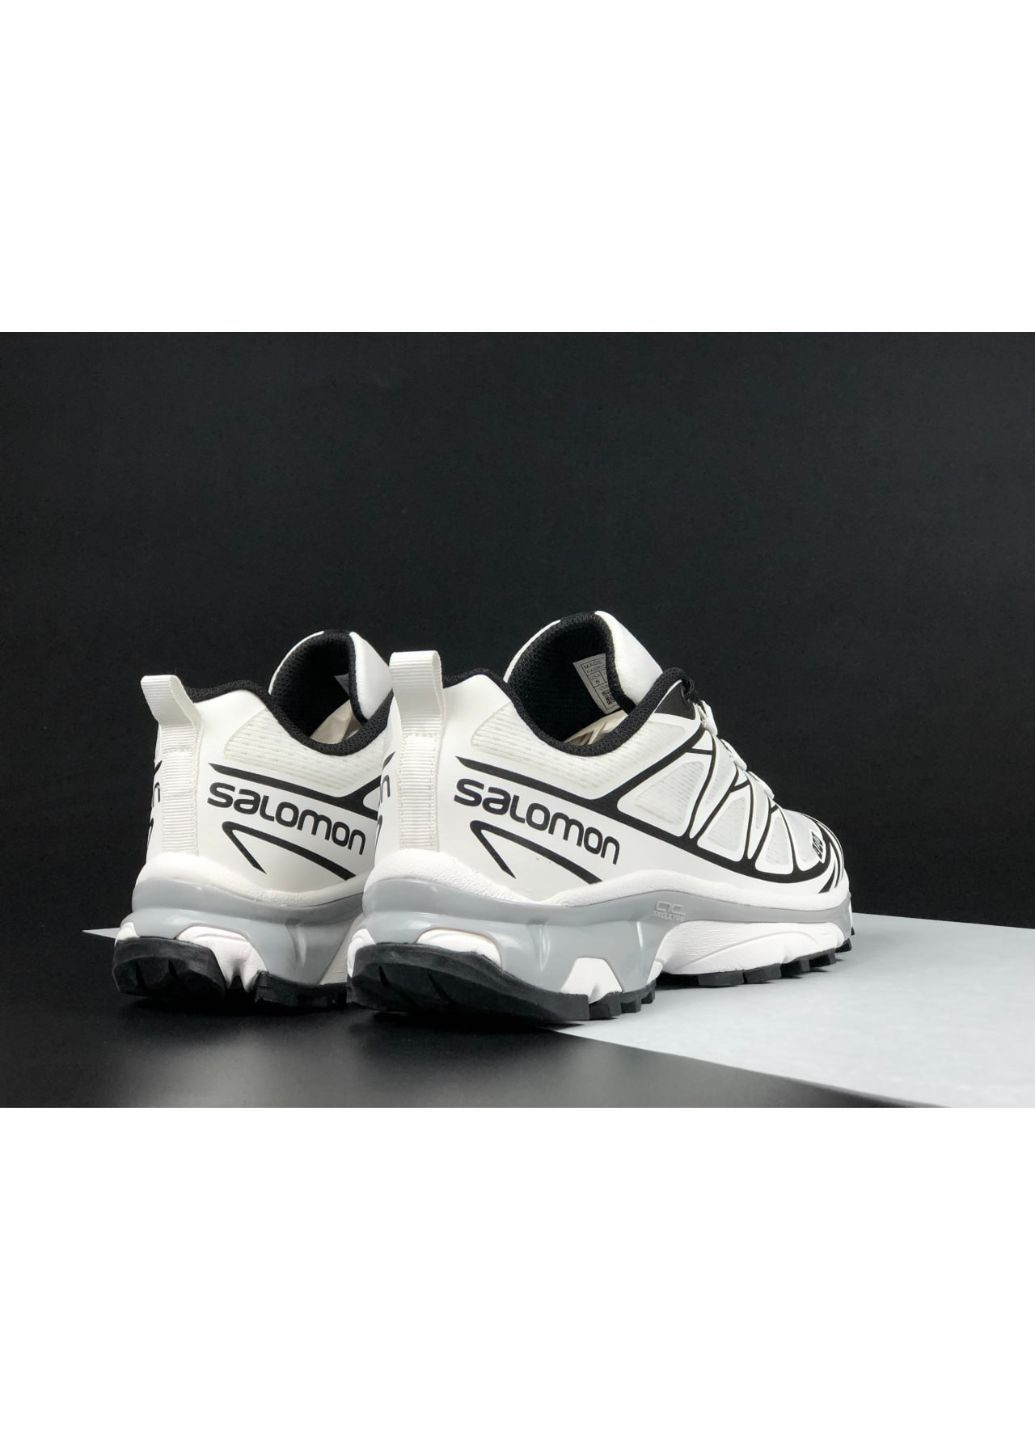 Чорно-білі Осінні чоловічі кросівки білі з чорним «no name» Salomon xt6